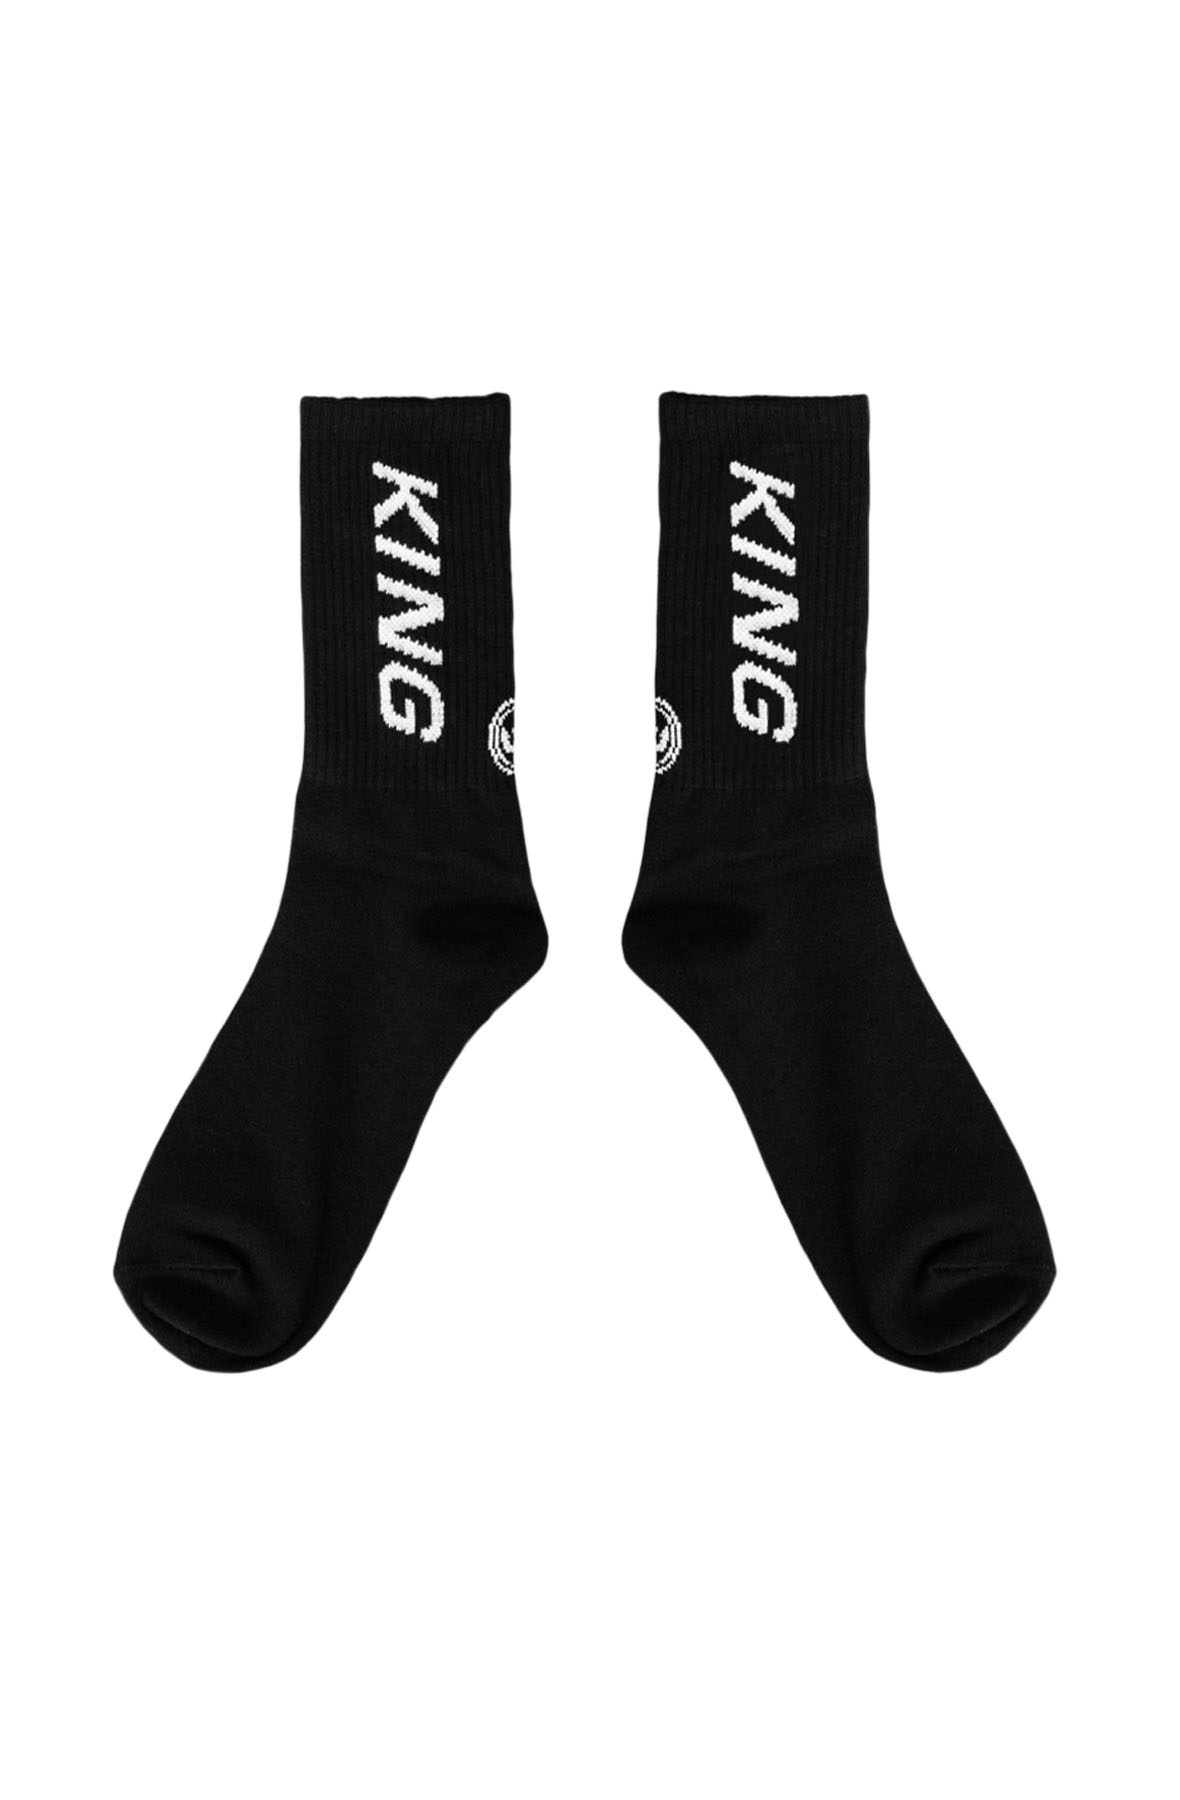 stepney socks - black/ white